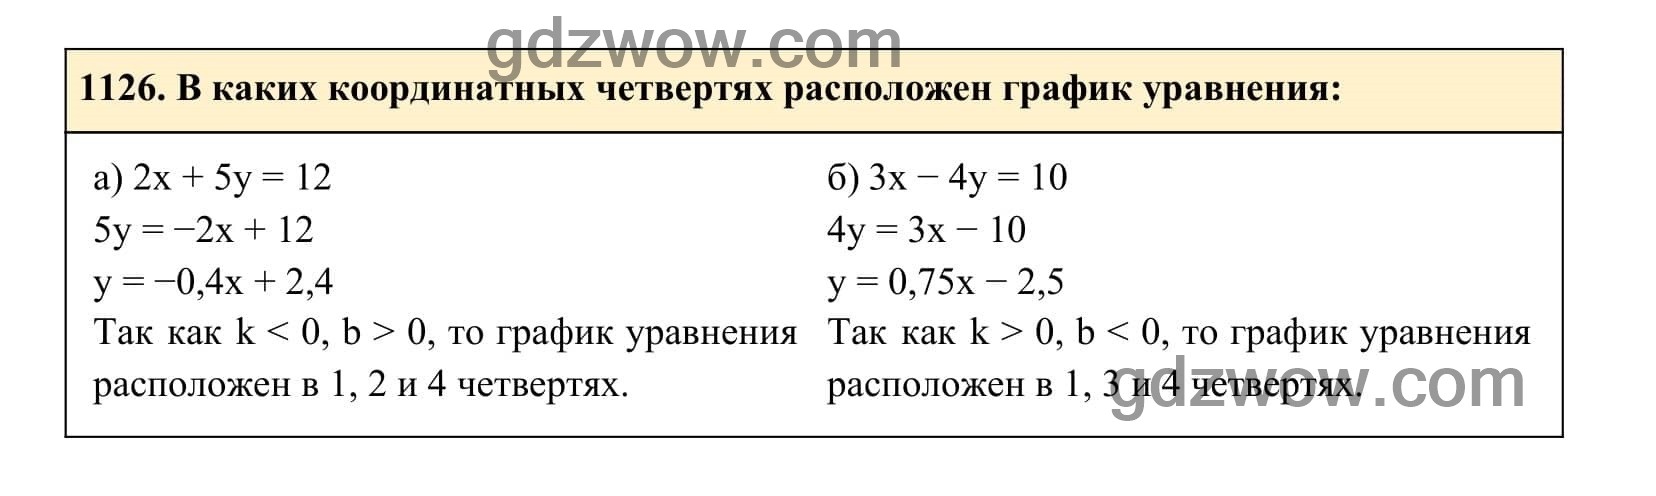 Упражнение 1126 - ГДЗ по Алгебре 7 класс Учебник Макарычев (решебник) - GDZwow